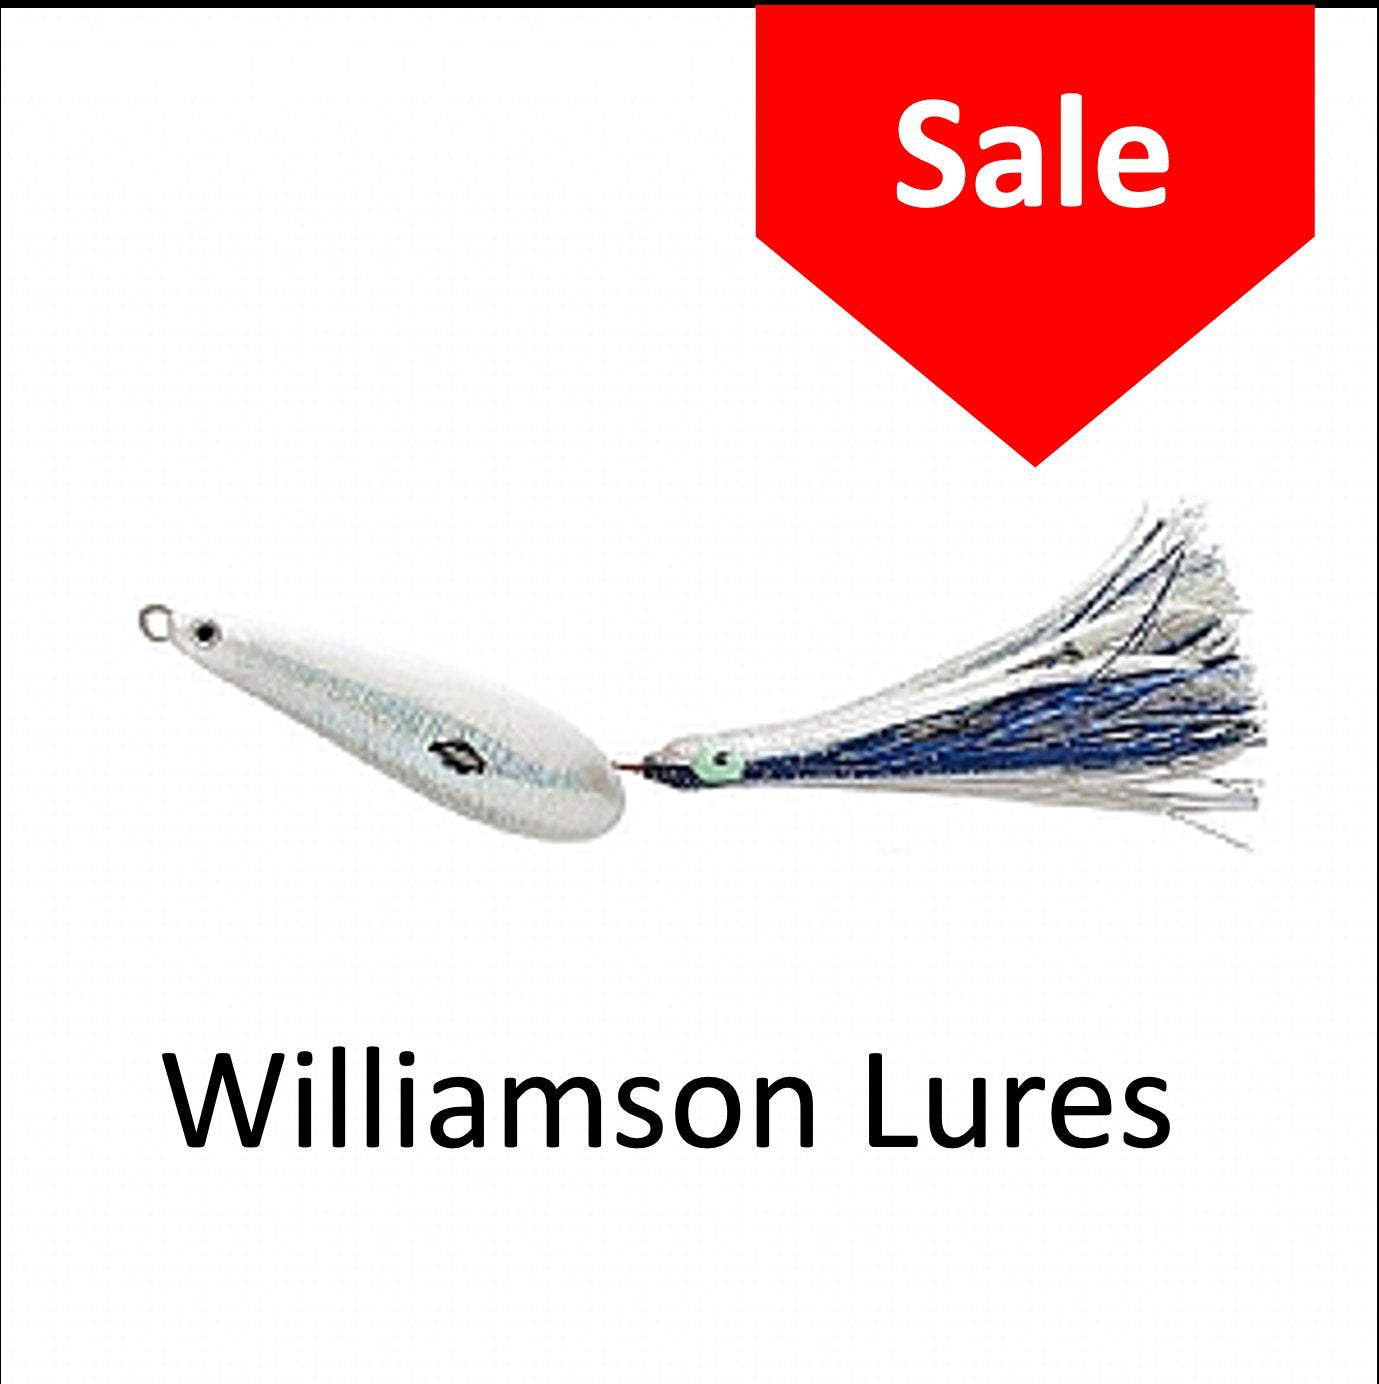 Williamson Lures Sale